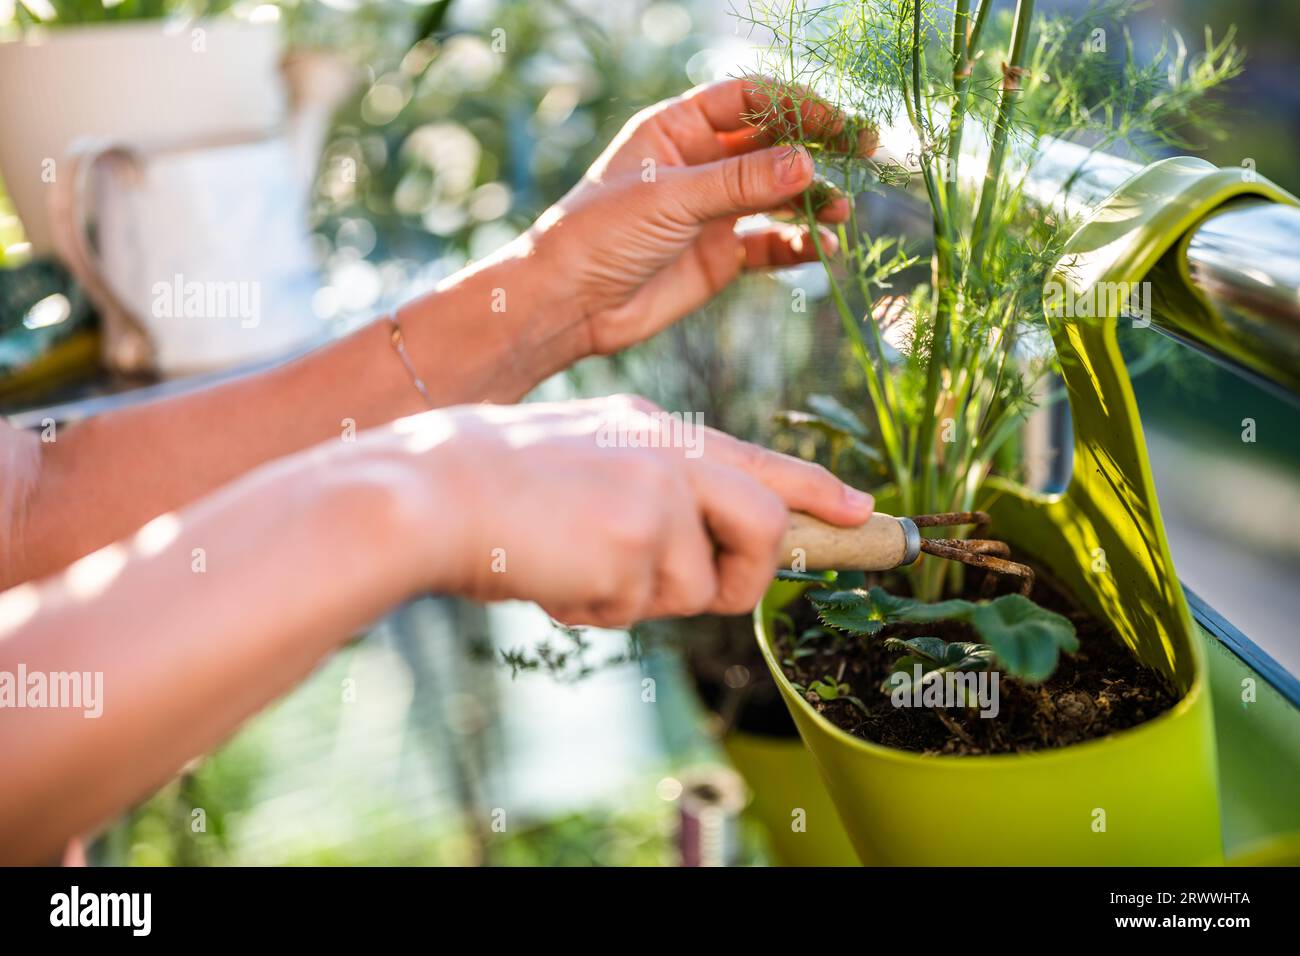 Image en gros plan des mains d'une femme prenant soin de sa plante d'aneth. Elle aime jardiner sur le balcon de sa maison. Banque D'Images